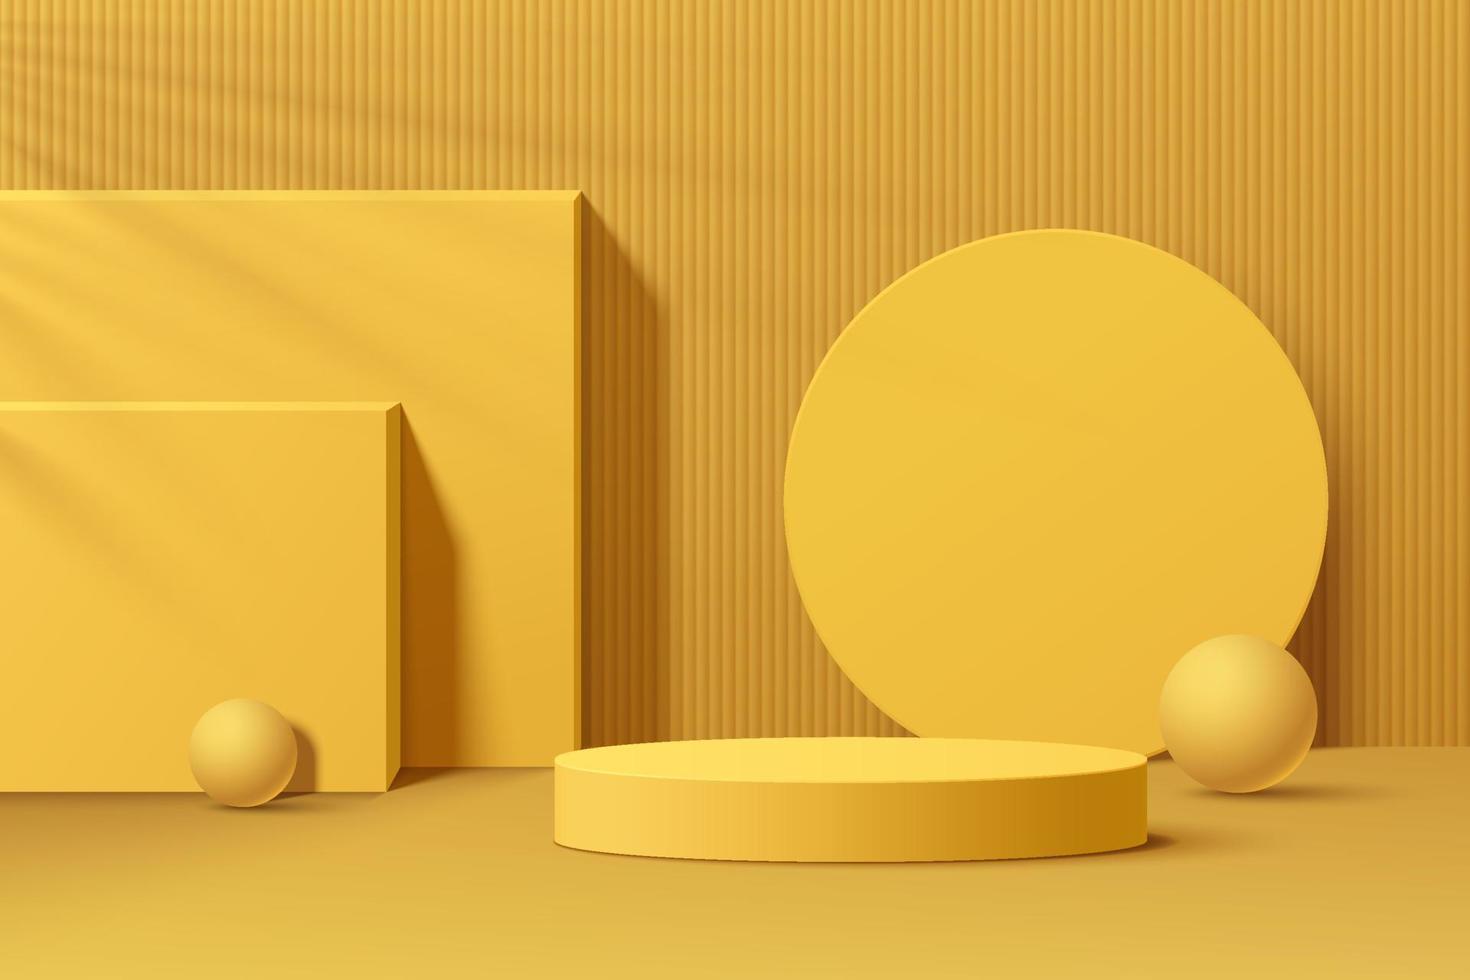 realistisch geel 3d cilindervoetstukpodium met geometrische vorm vastgestelde achtergrond. minimale scène voor productenshowcase, promotievertoning. abstract studioruimteplatformontwerp. vectorillustratie. vector